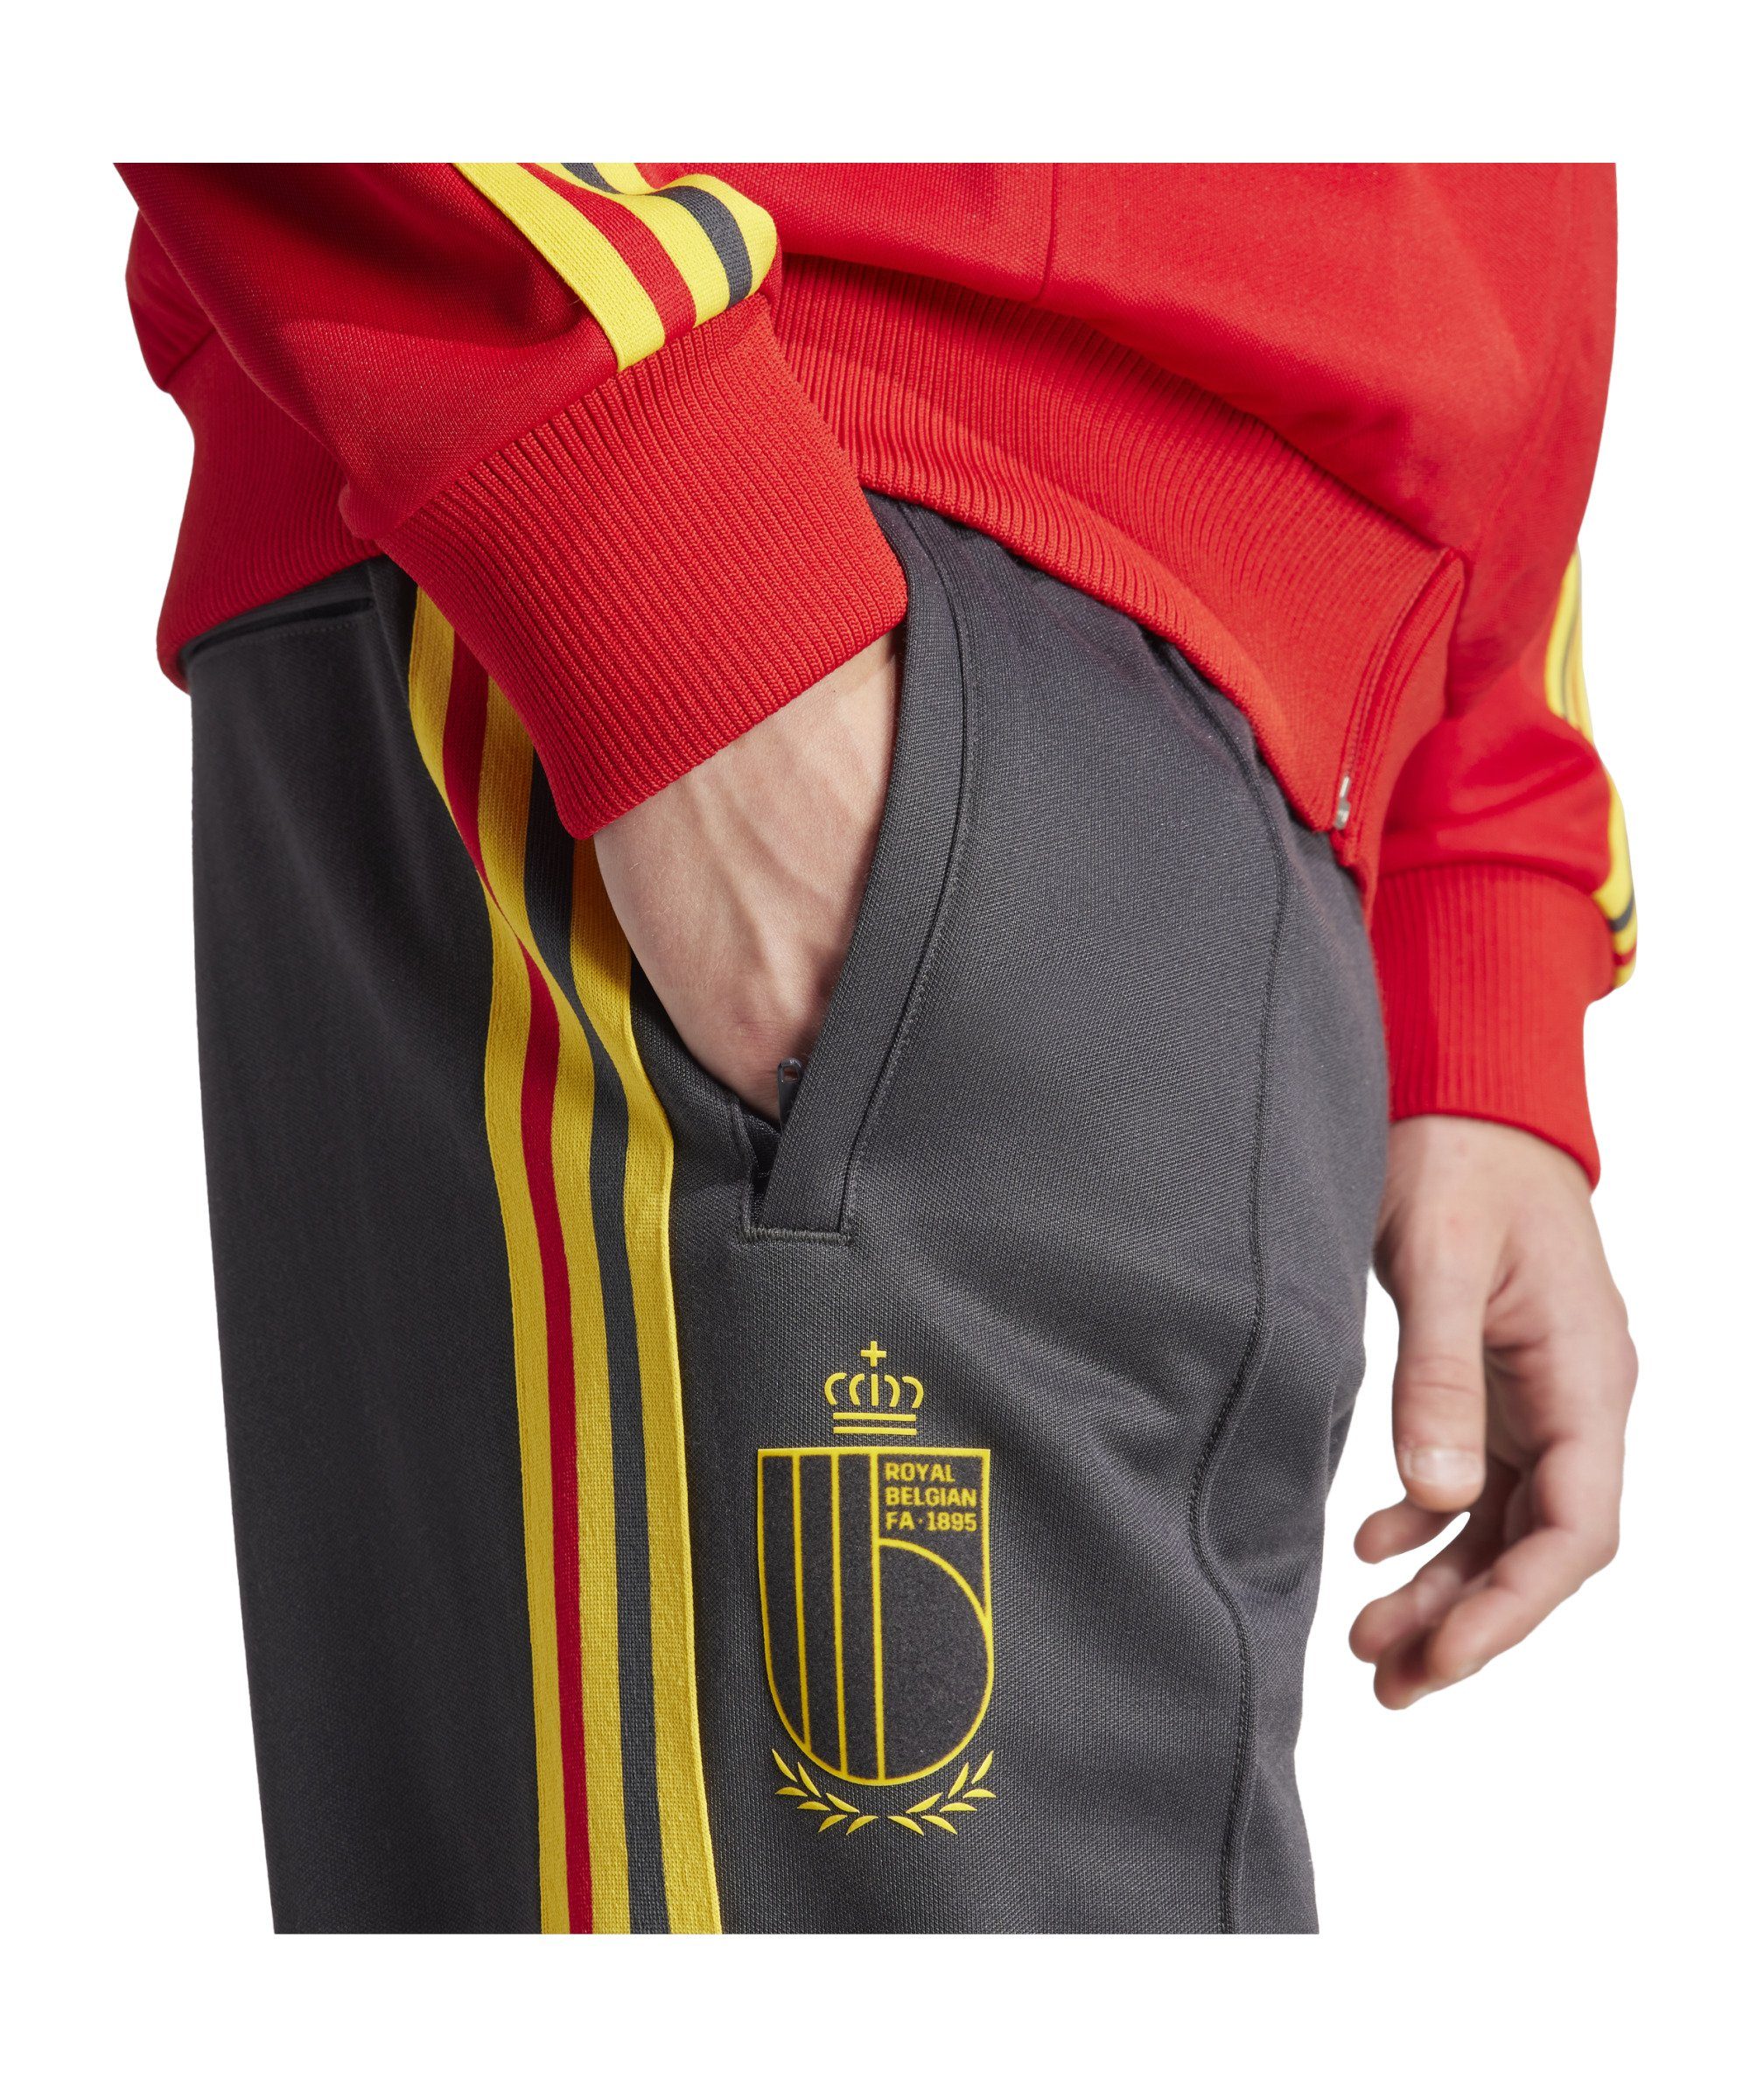 Sporthose Trainingshose Originals Belgien adidas